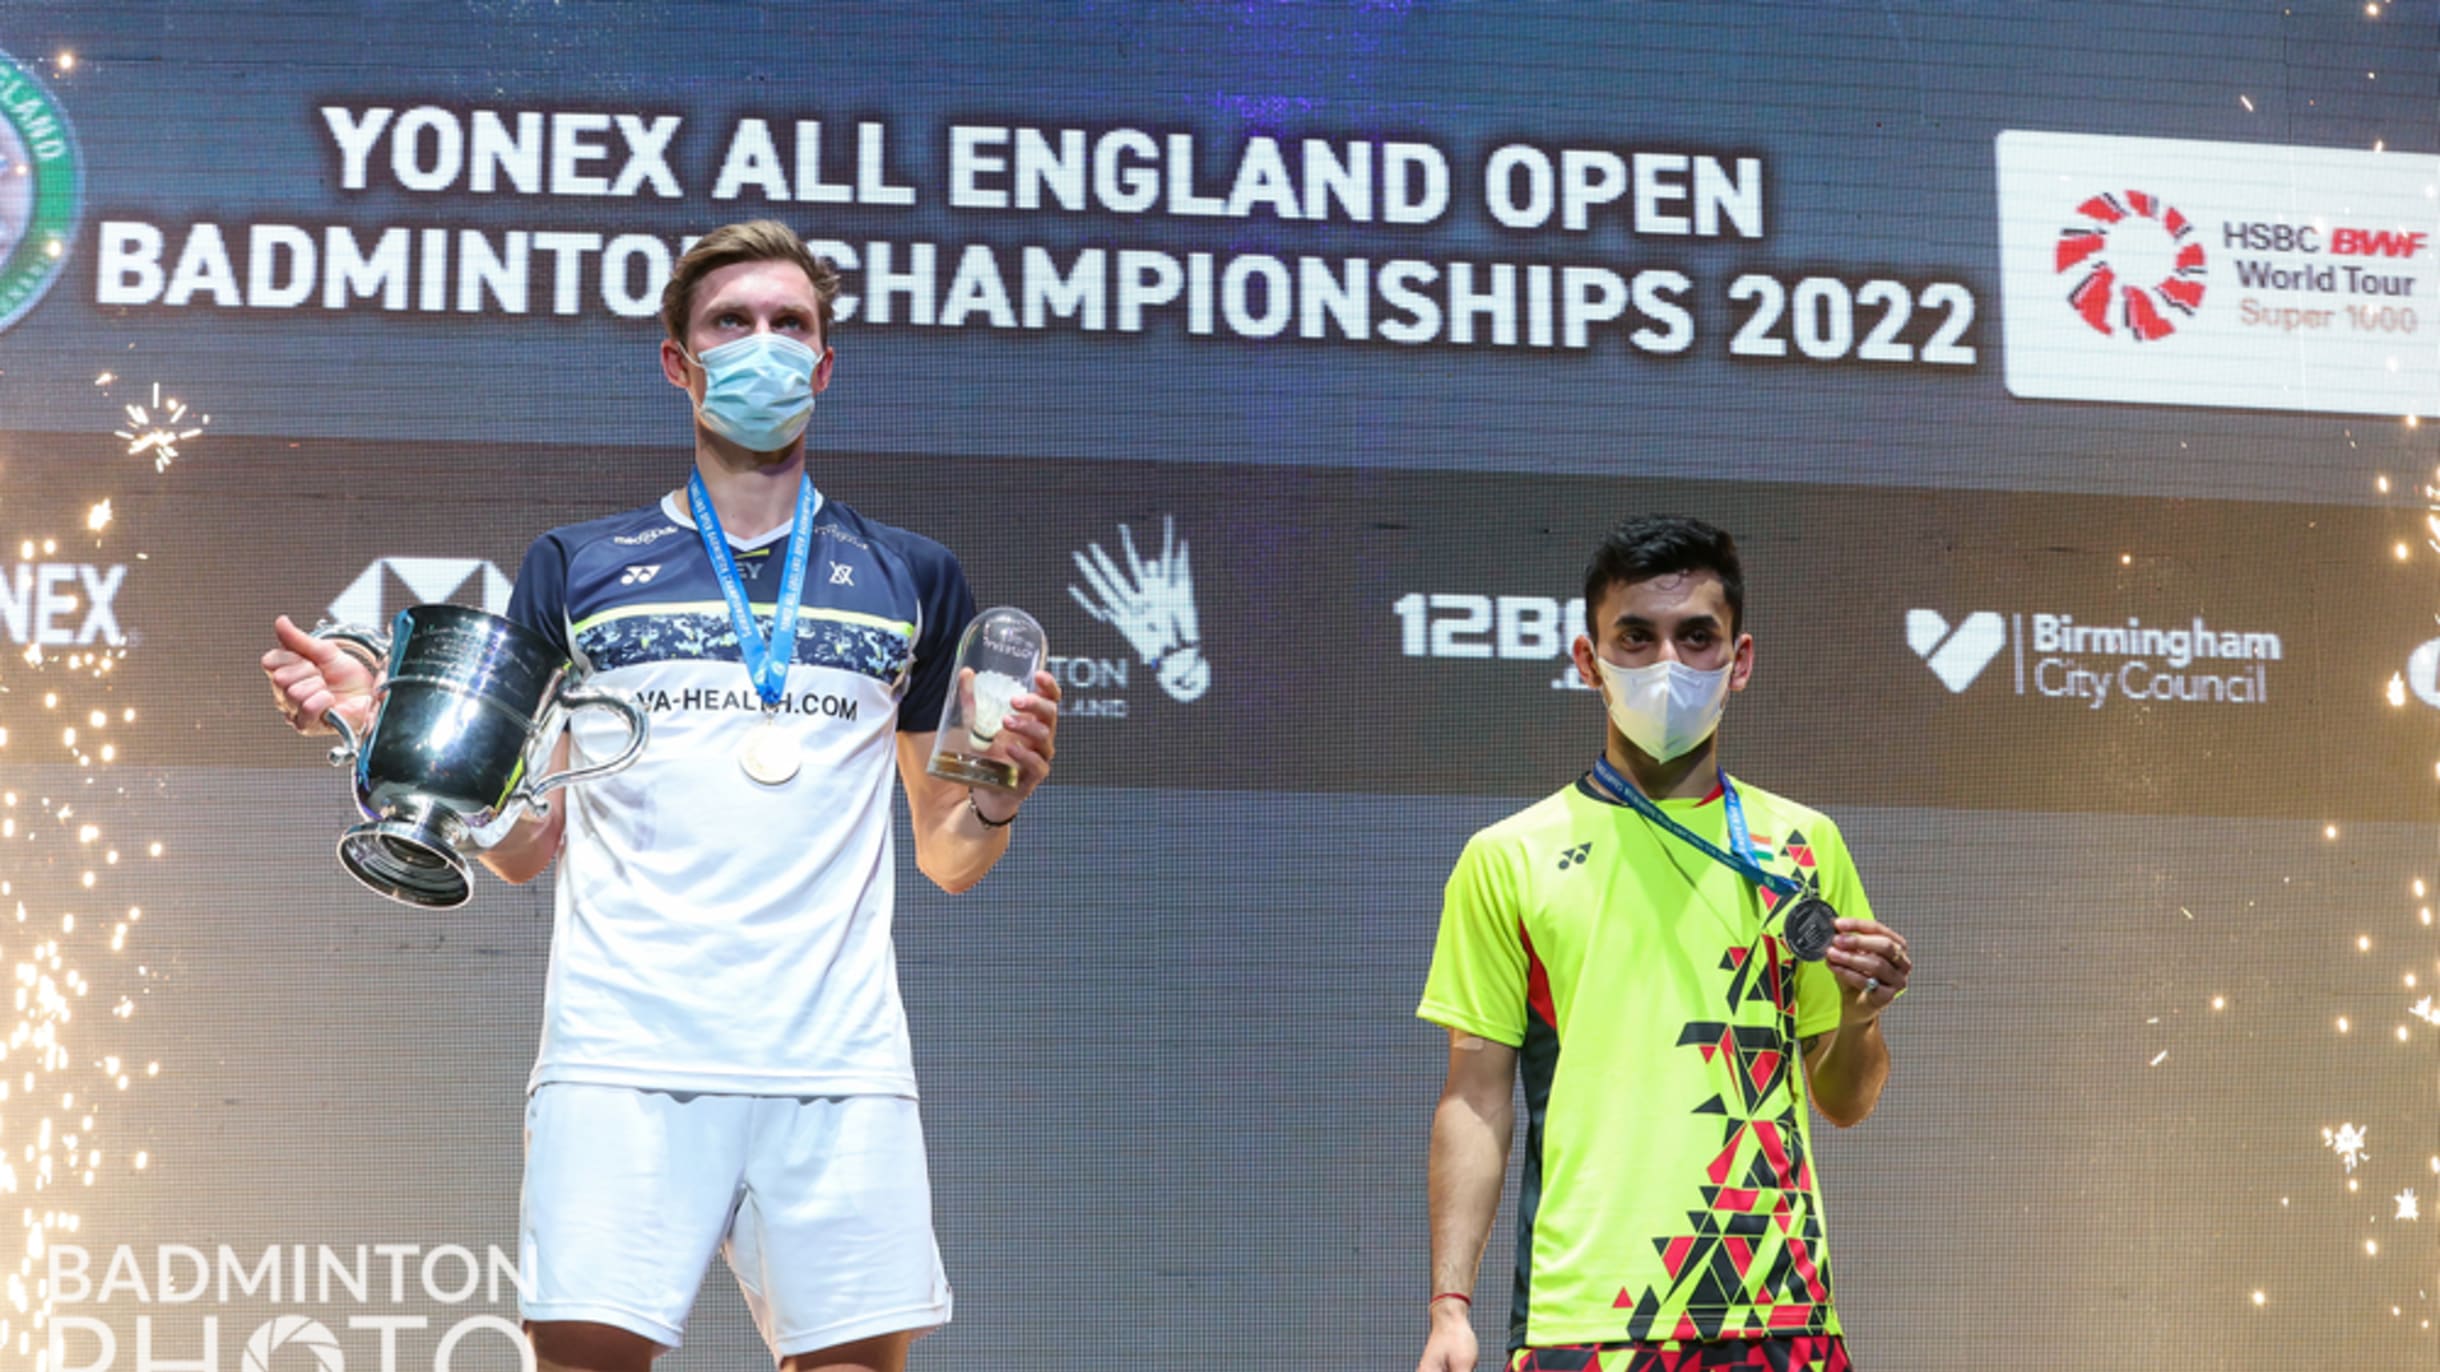 2022 all england open badminton